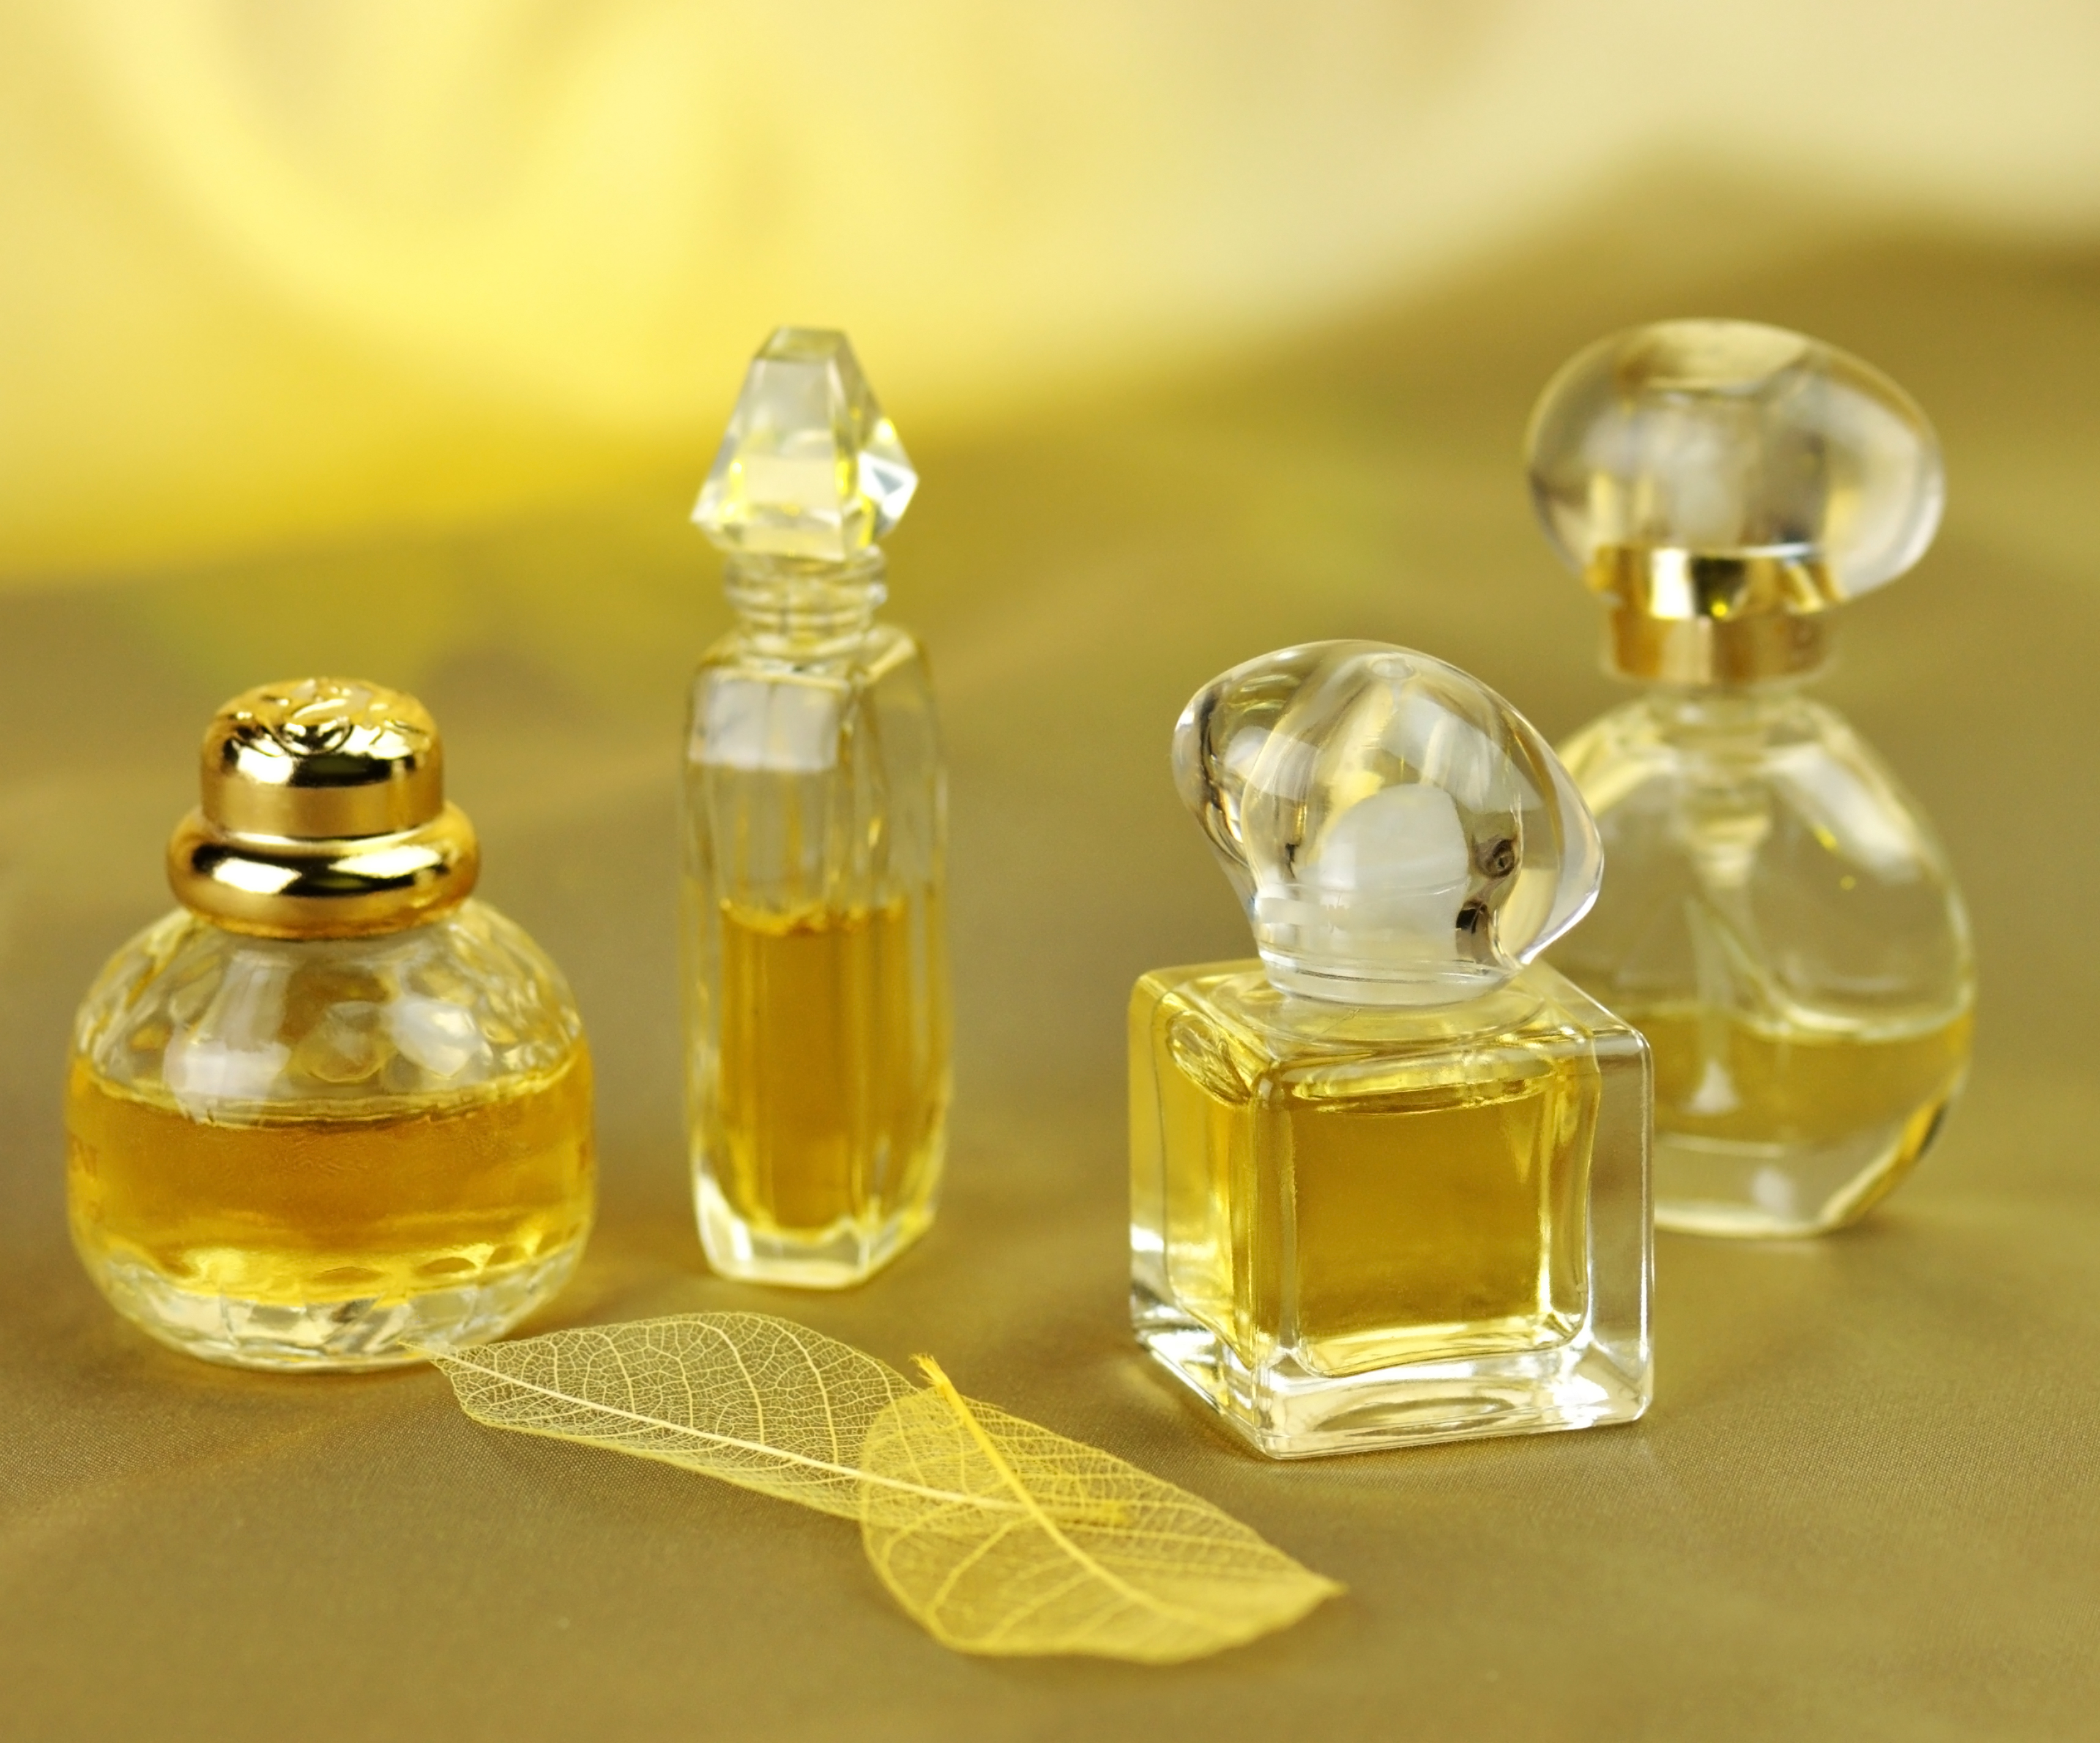 42 allergifremkaldende parfumestoffer er blevet undersøgt af Miljøstyrelsen